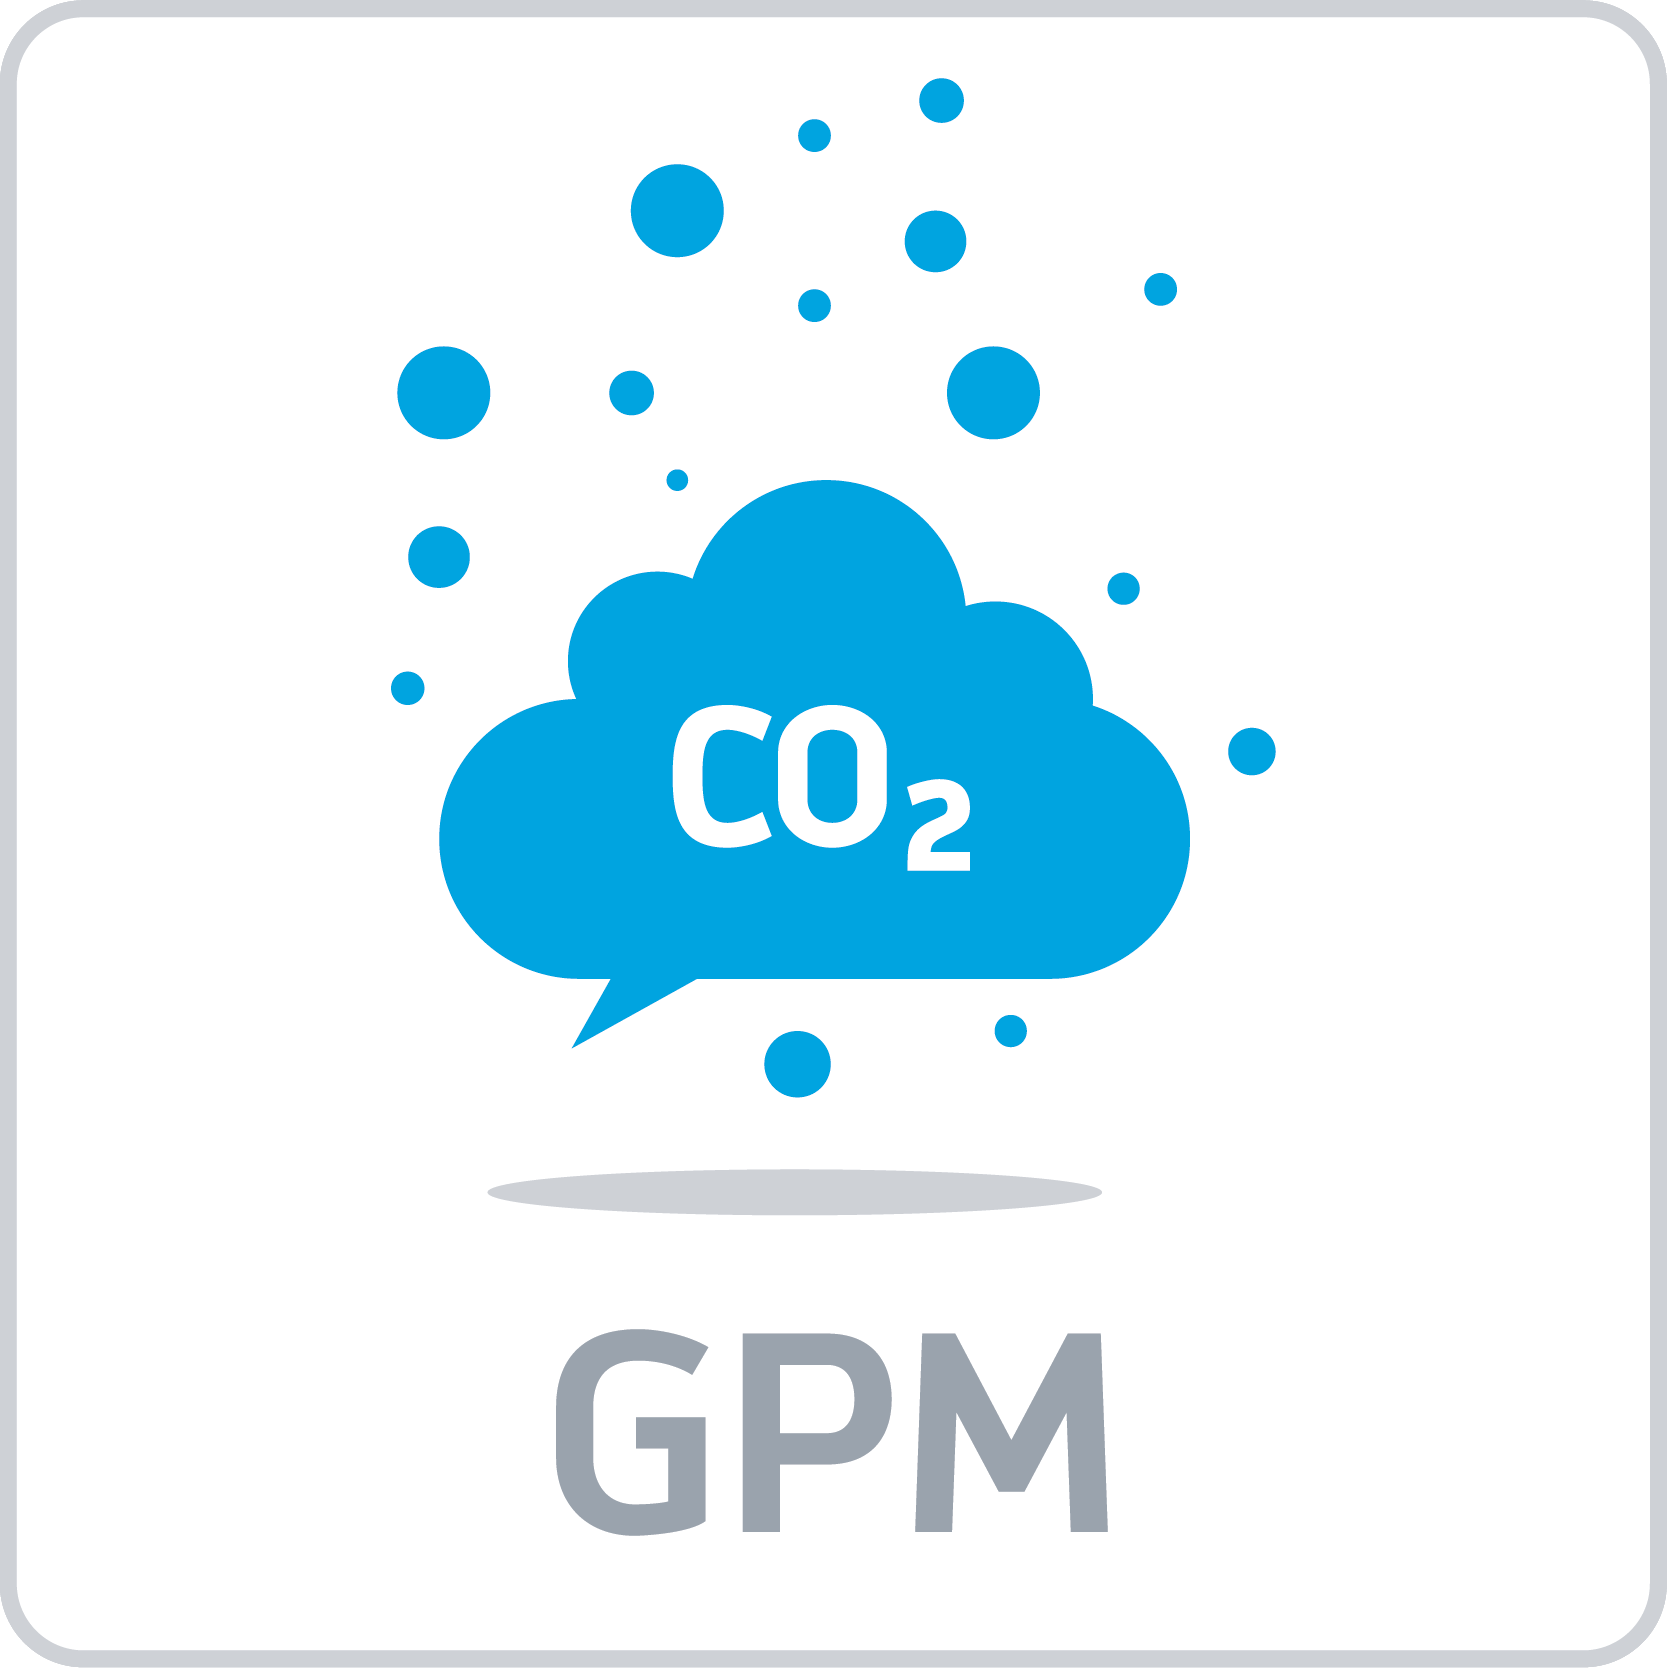 GM Grams Per Mile (GPM)